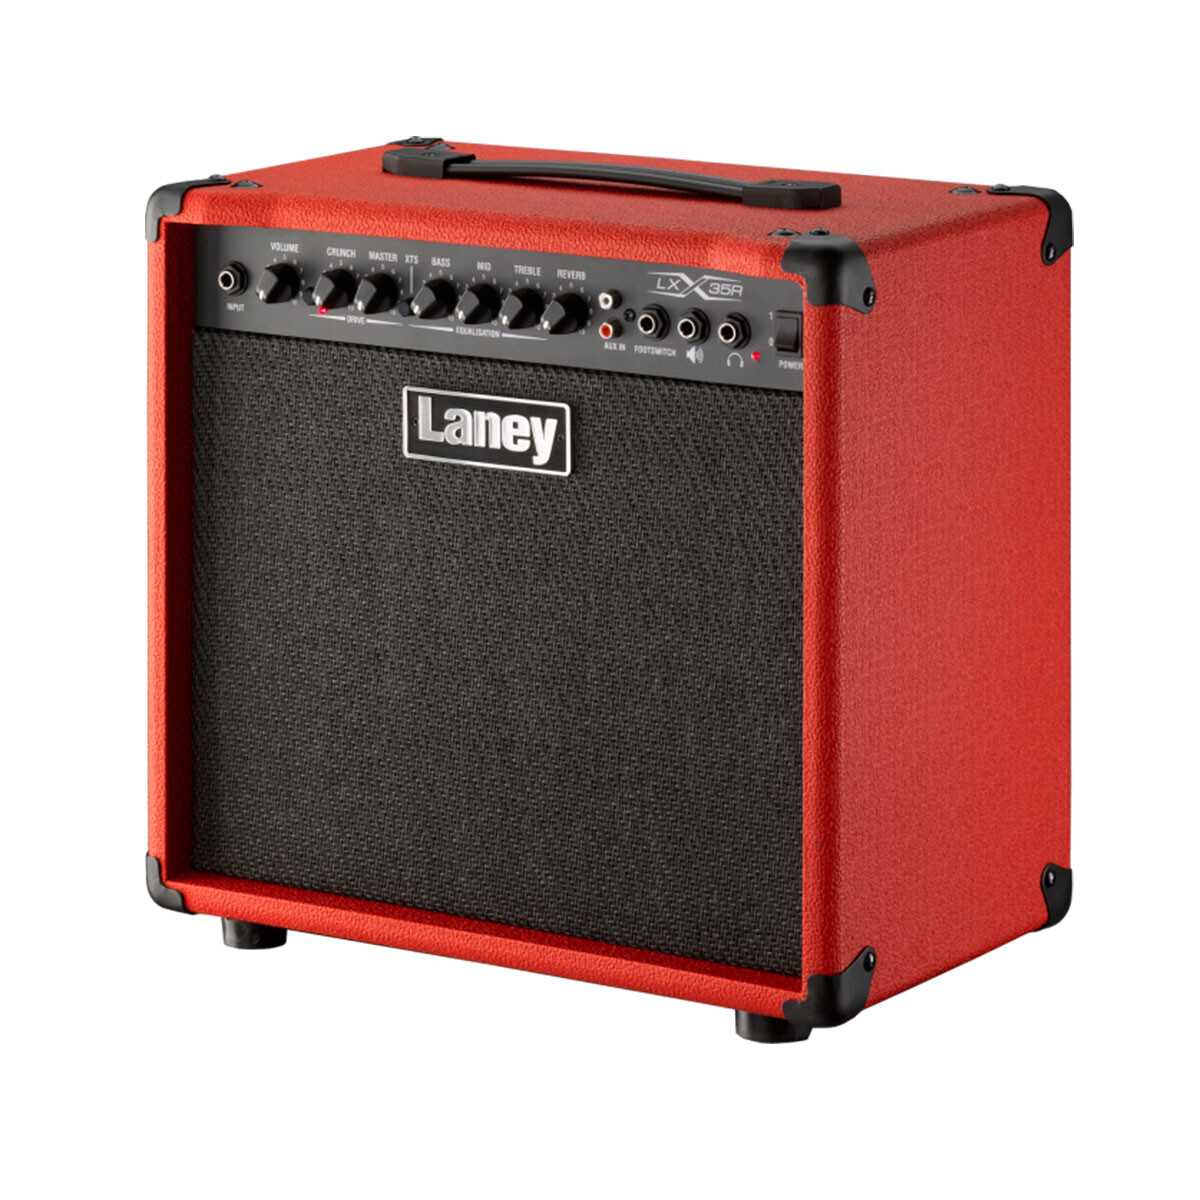 Amplificador guitarra Laney LX35R red 35w 